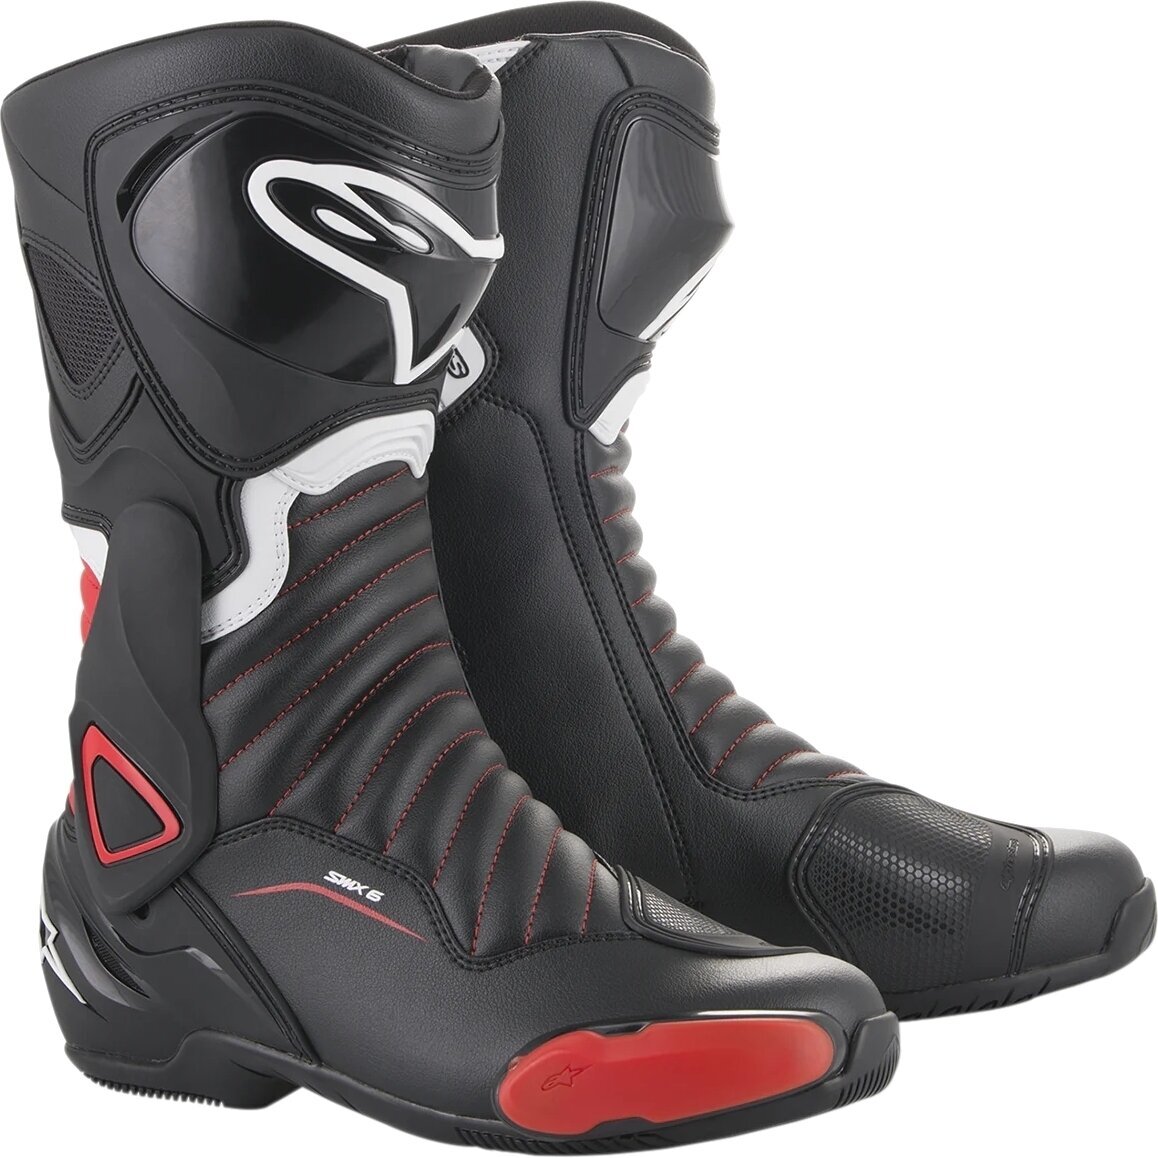 Topánky Alpinestars SMX-6 V2 Boots Black/Gray/Red Fluo 45 Topánky